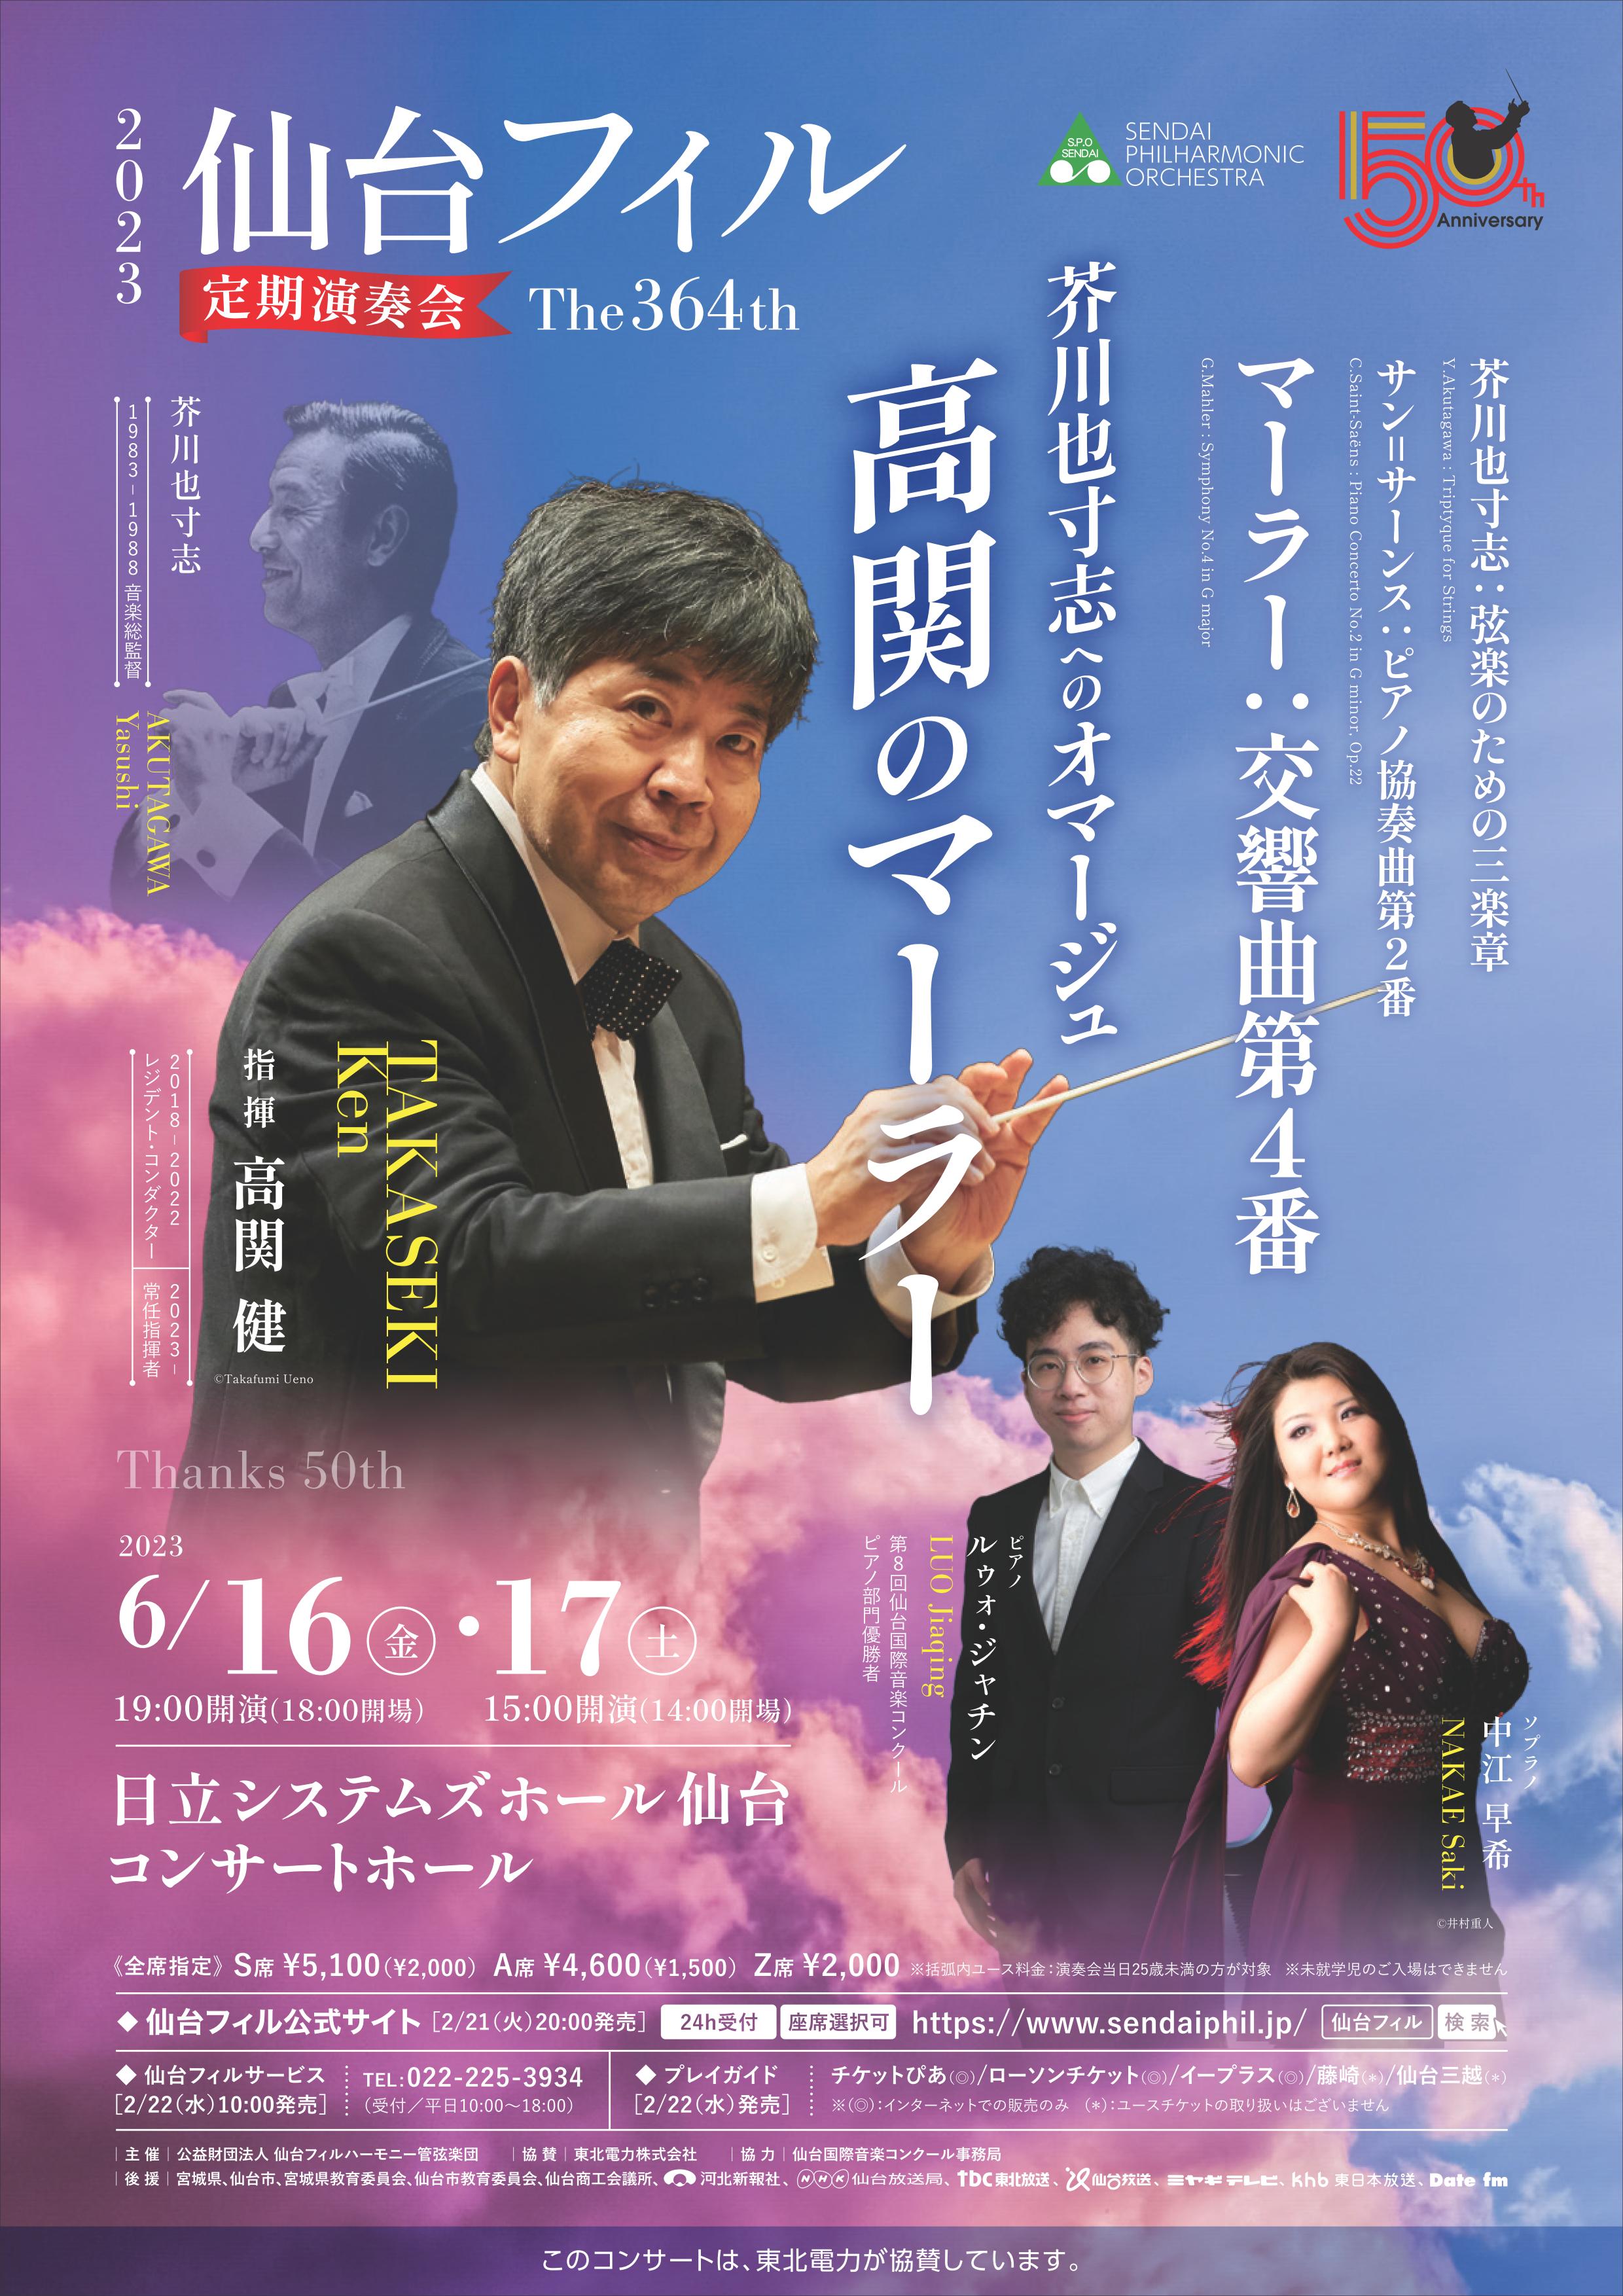 仙台フィルハーモニー管弦楽団第364回定期演奏会のフライヤー画像